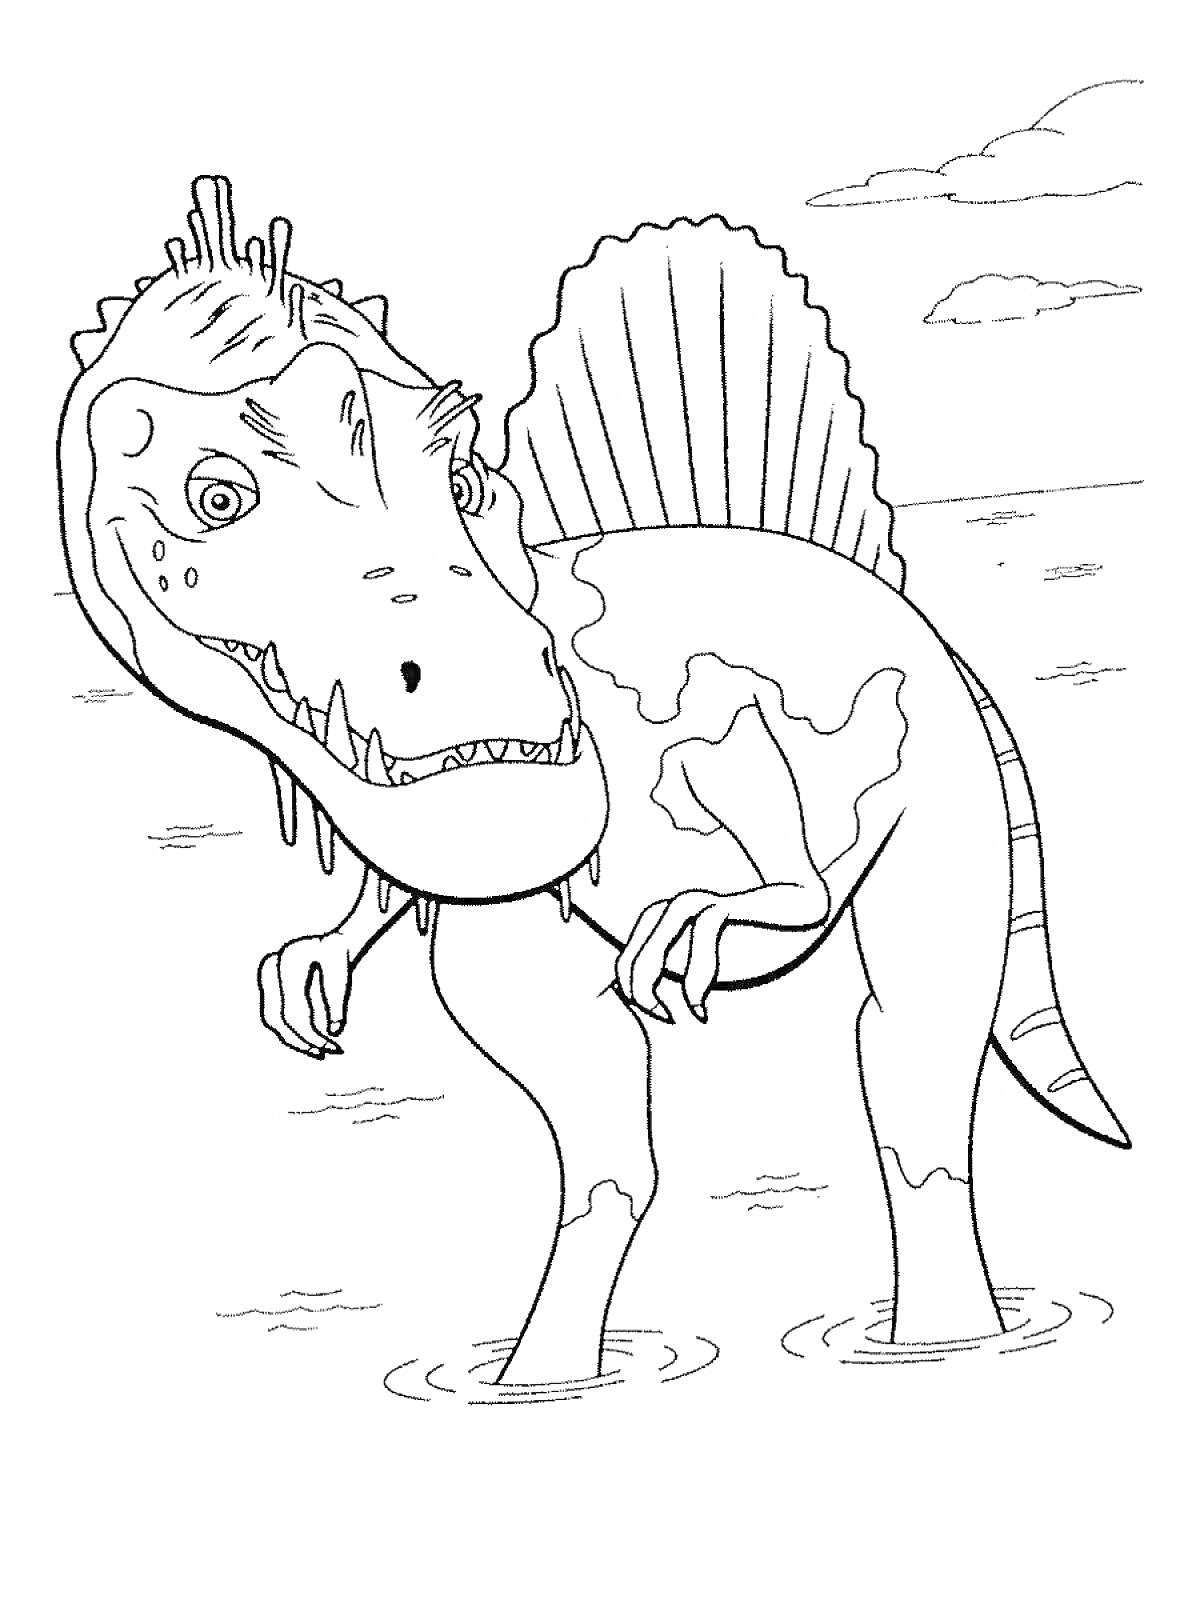 Раскраска Динозавр в воде с плавником на спине и облаками на заднем плане